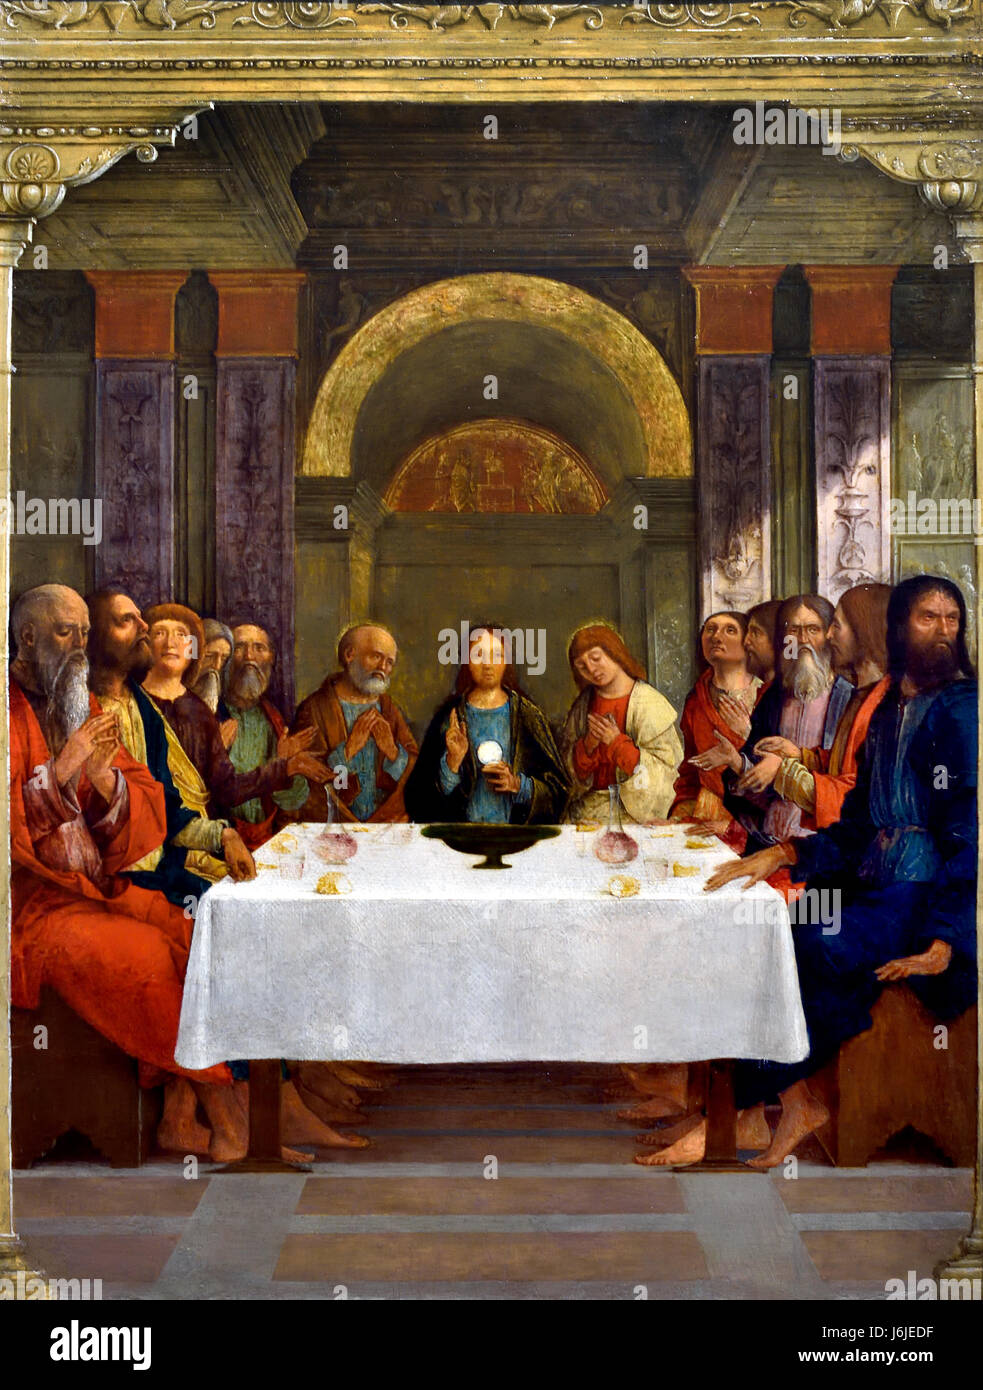 Die Institution der Eucharistie 1490 Ercole de' Roberti aktive 1479 starb 1496 Italien Italienisch (Christ wird angezeigt beim letzten Abendmahl das eucharistische Brot hält. Wahrscheinlich malte in Ferrara in der 1490s als die Tür eines Tabernakels für das Brot und Wein der Messe.  ) Stockfoto